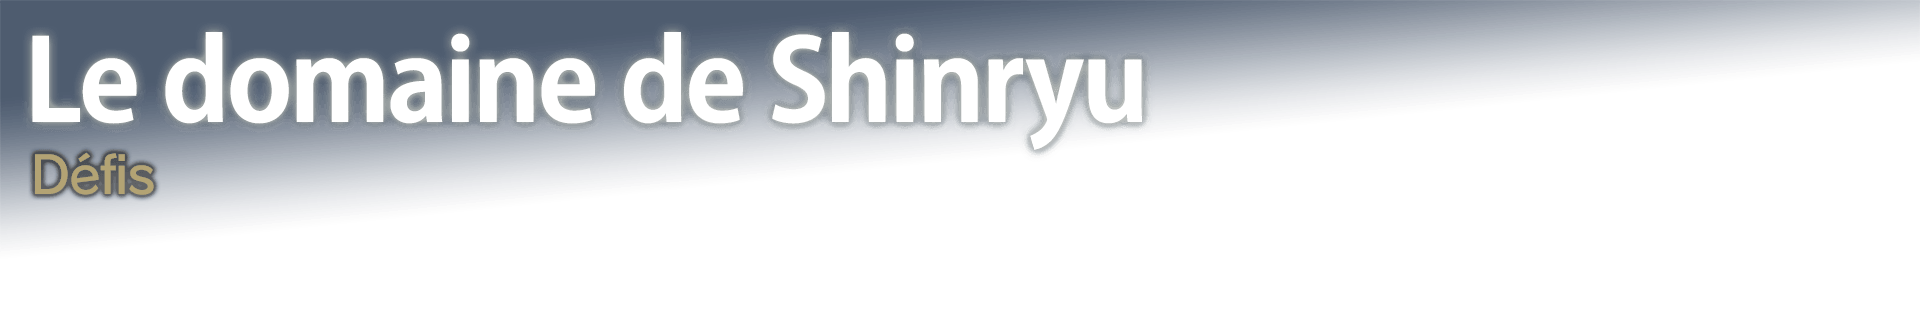 Le domaine de Shinryu Défis